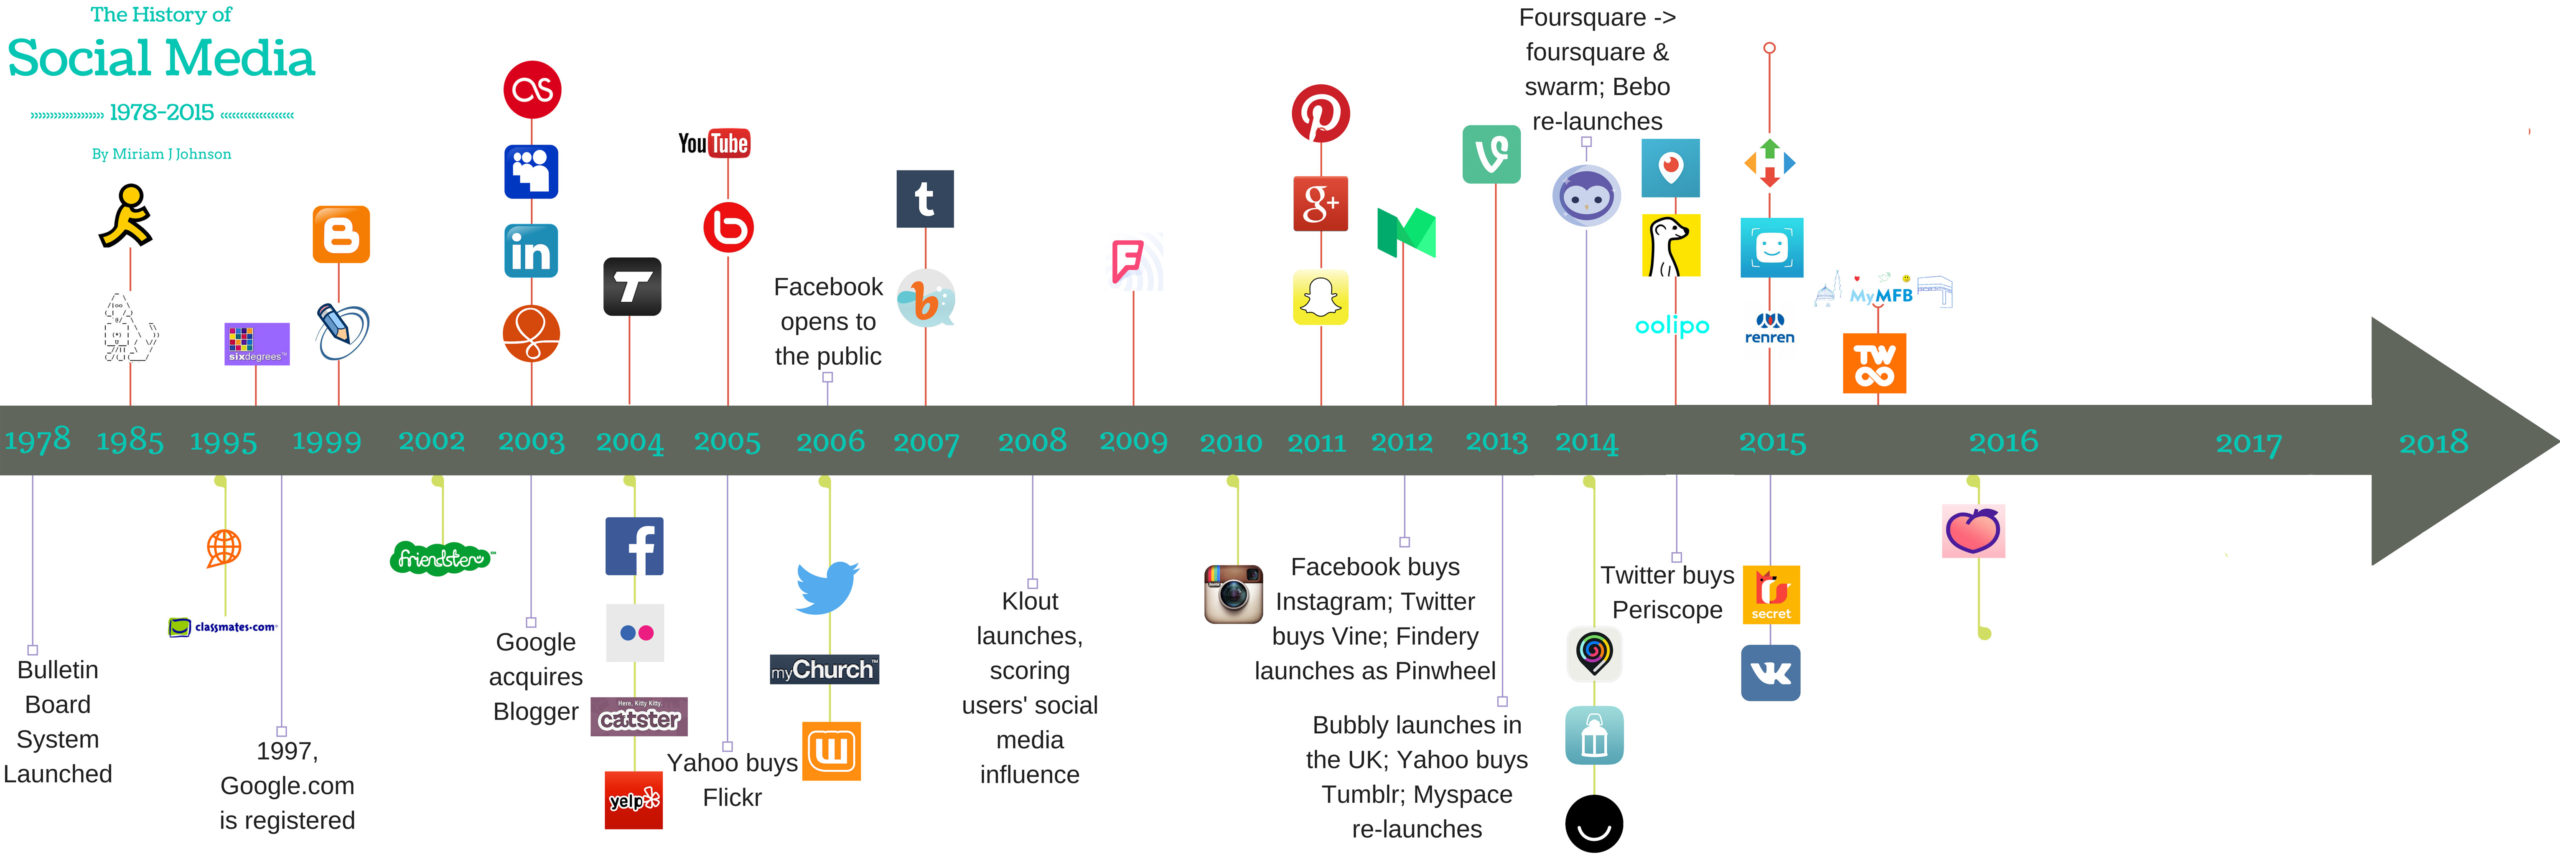 social media timeline